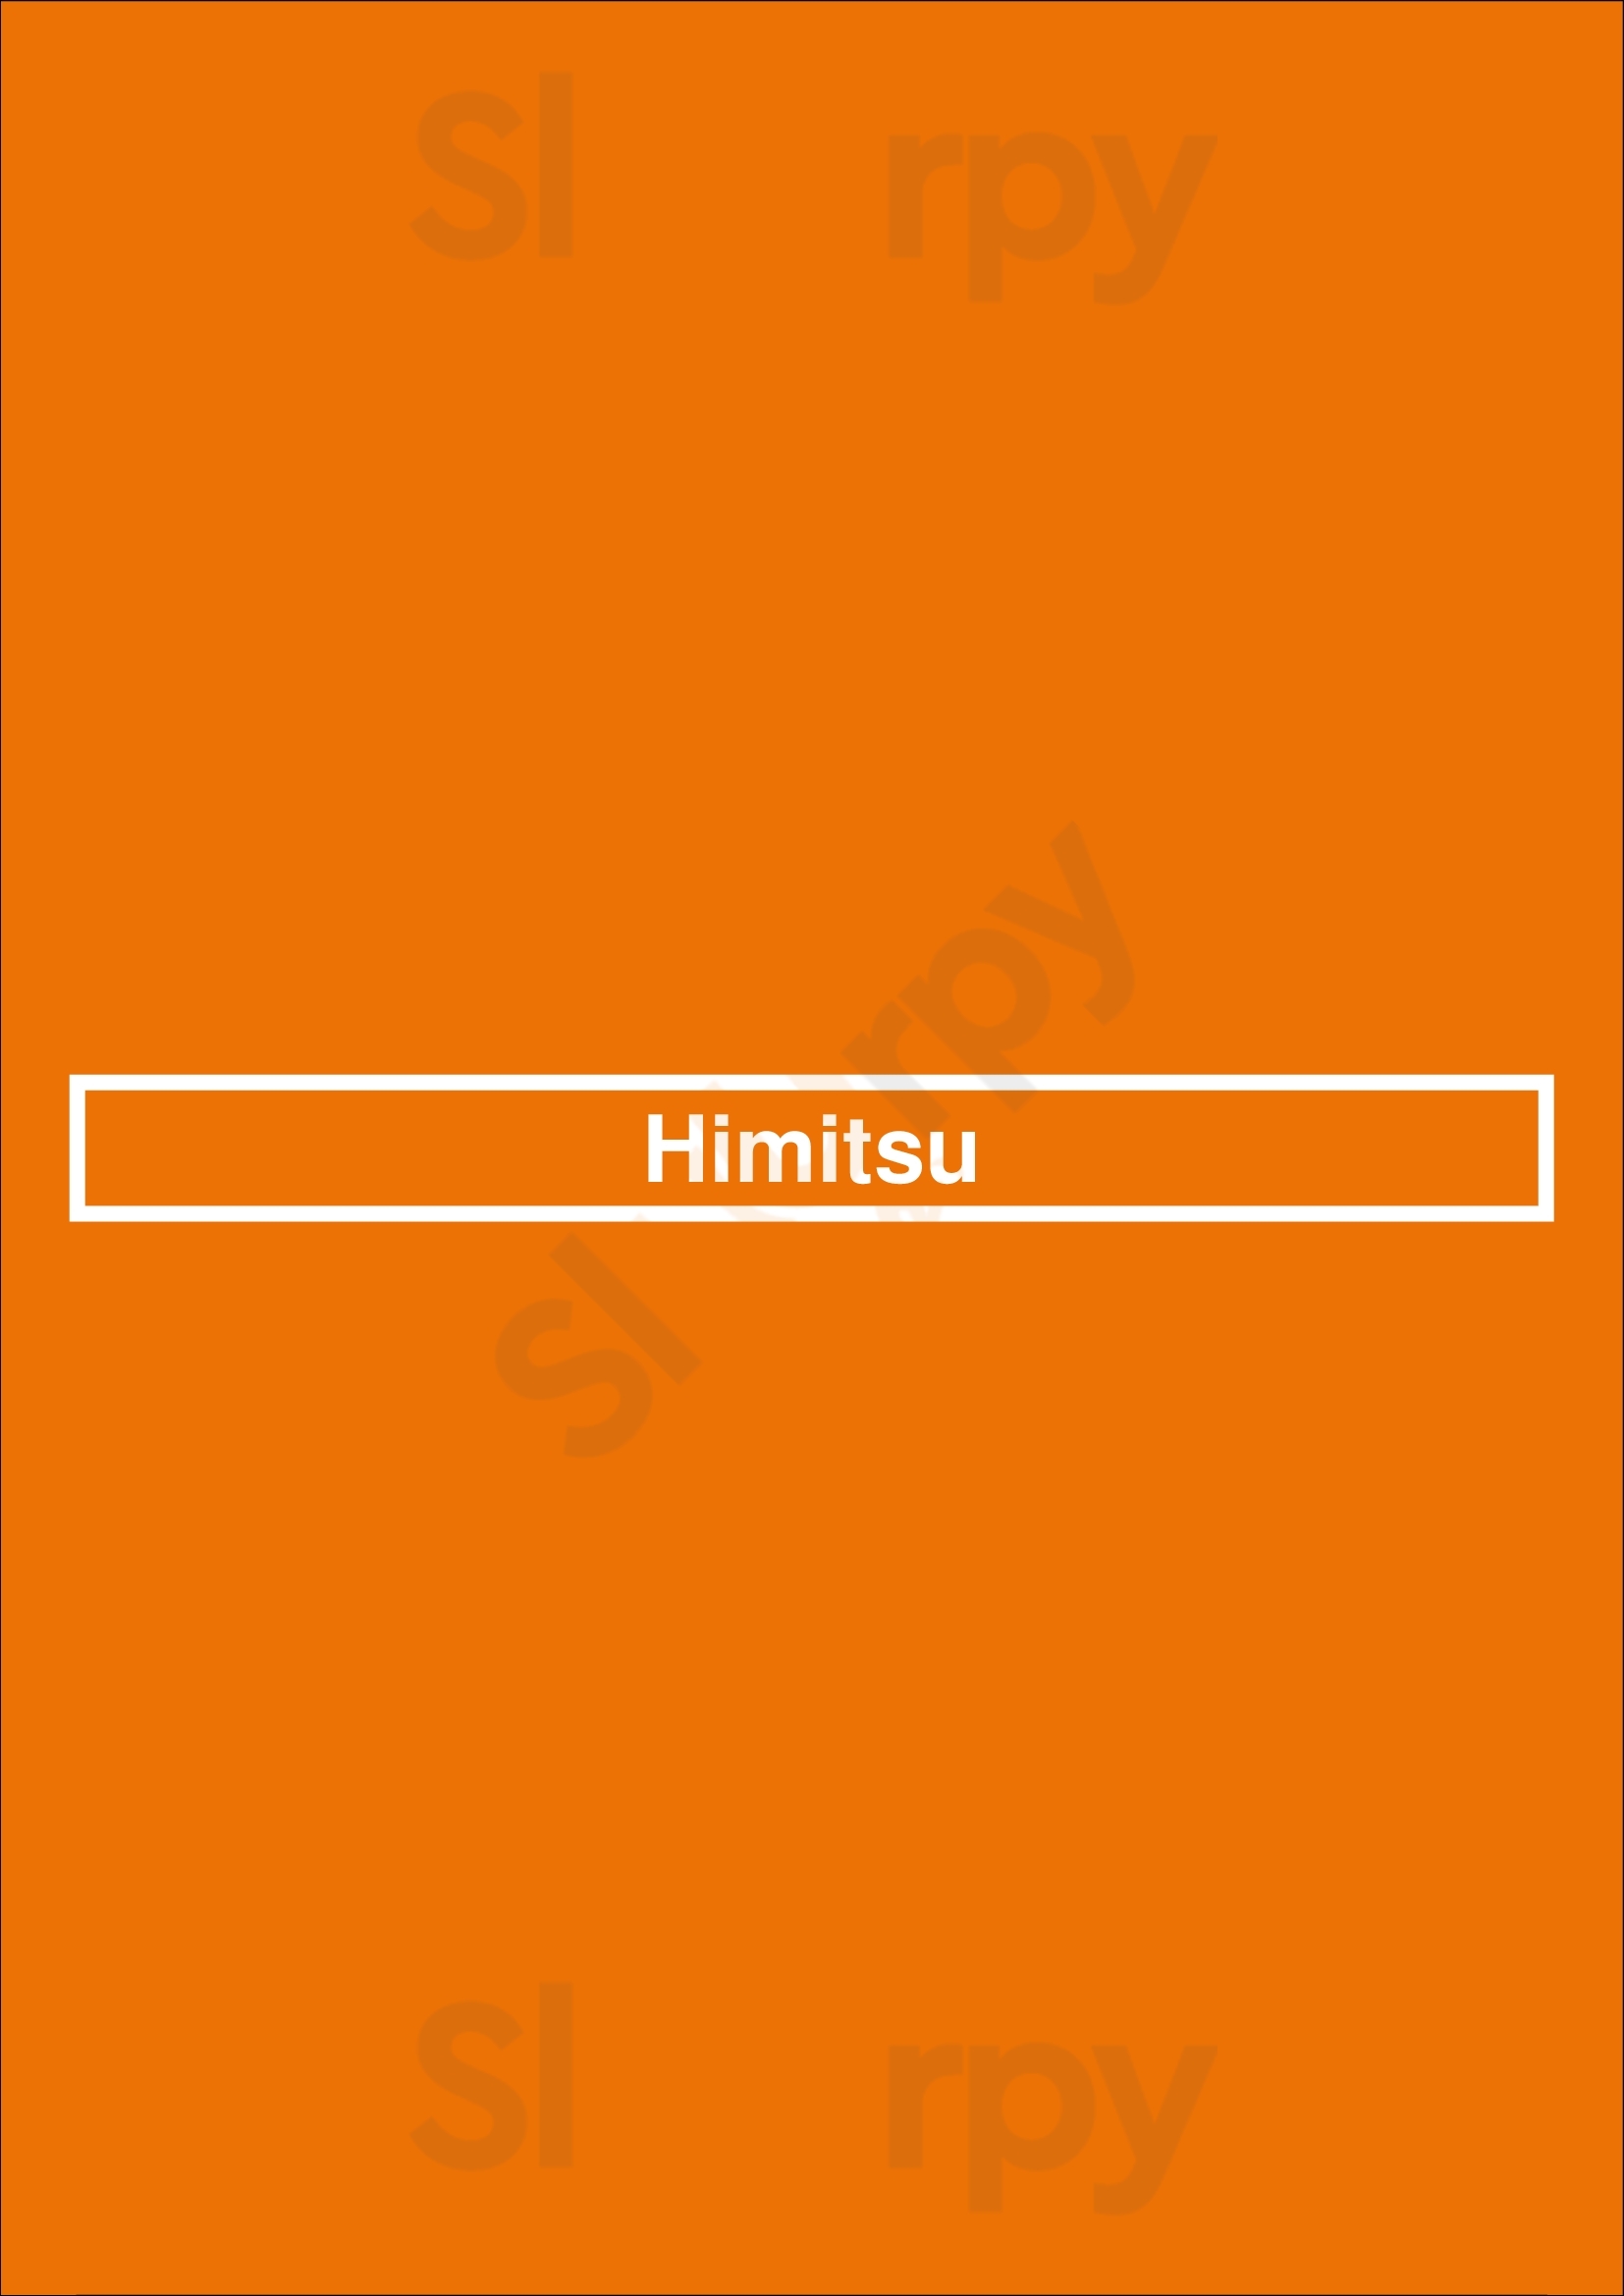 Himitsu La Jolla Menu - 1